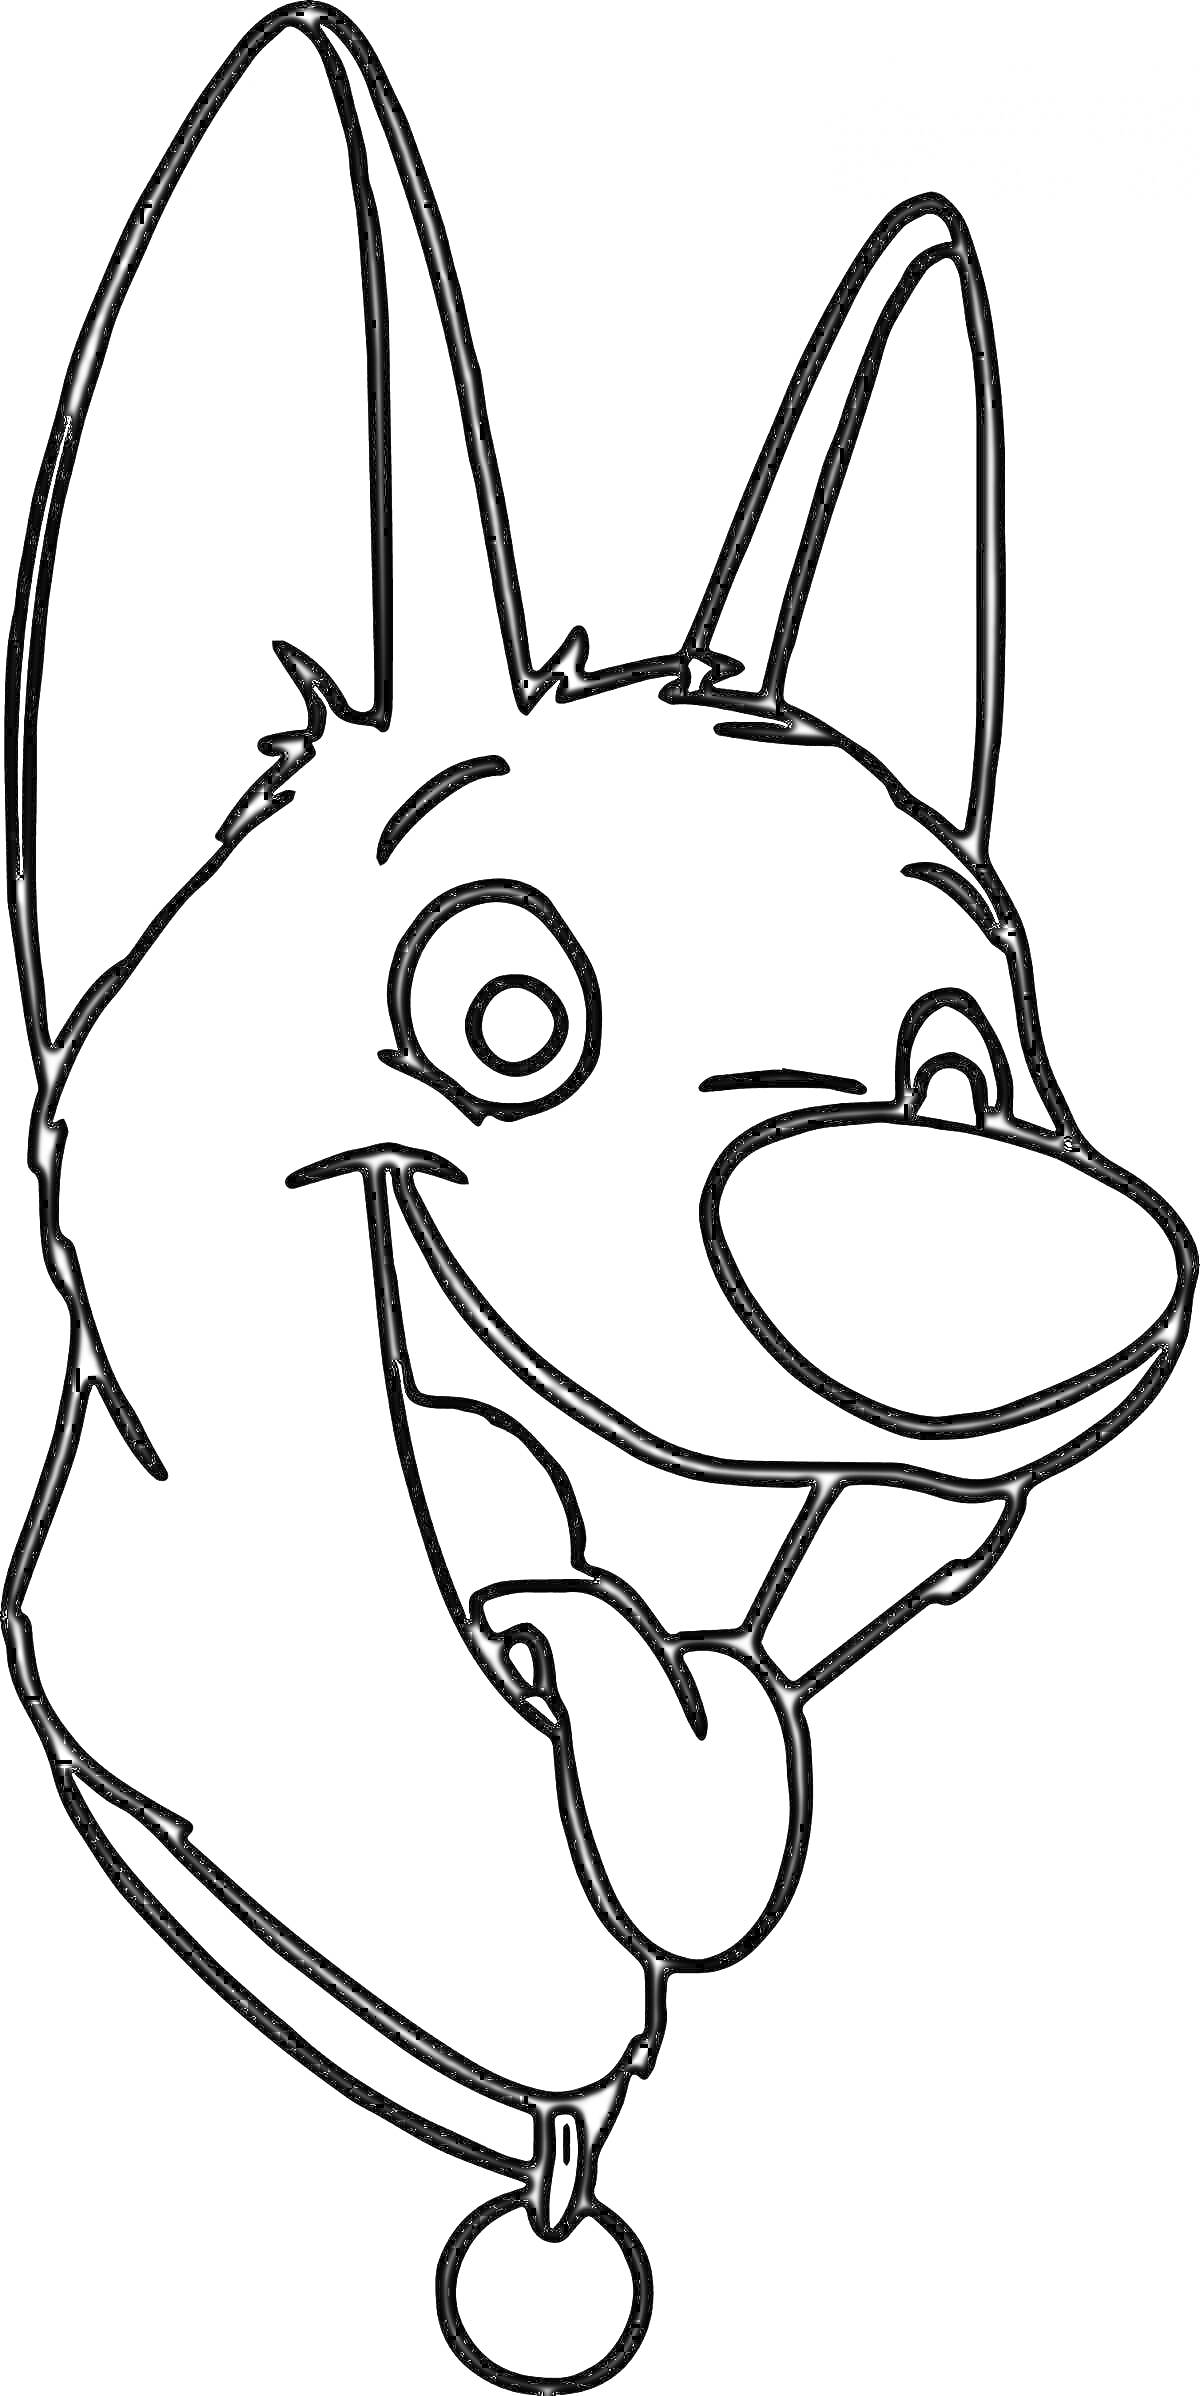 Раскраска Голова собаки с высунутым языком и ошейником с медальоном